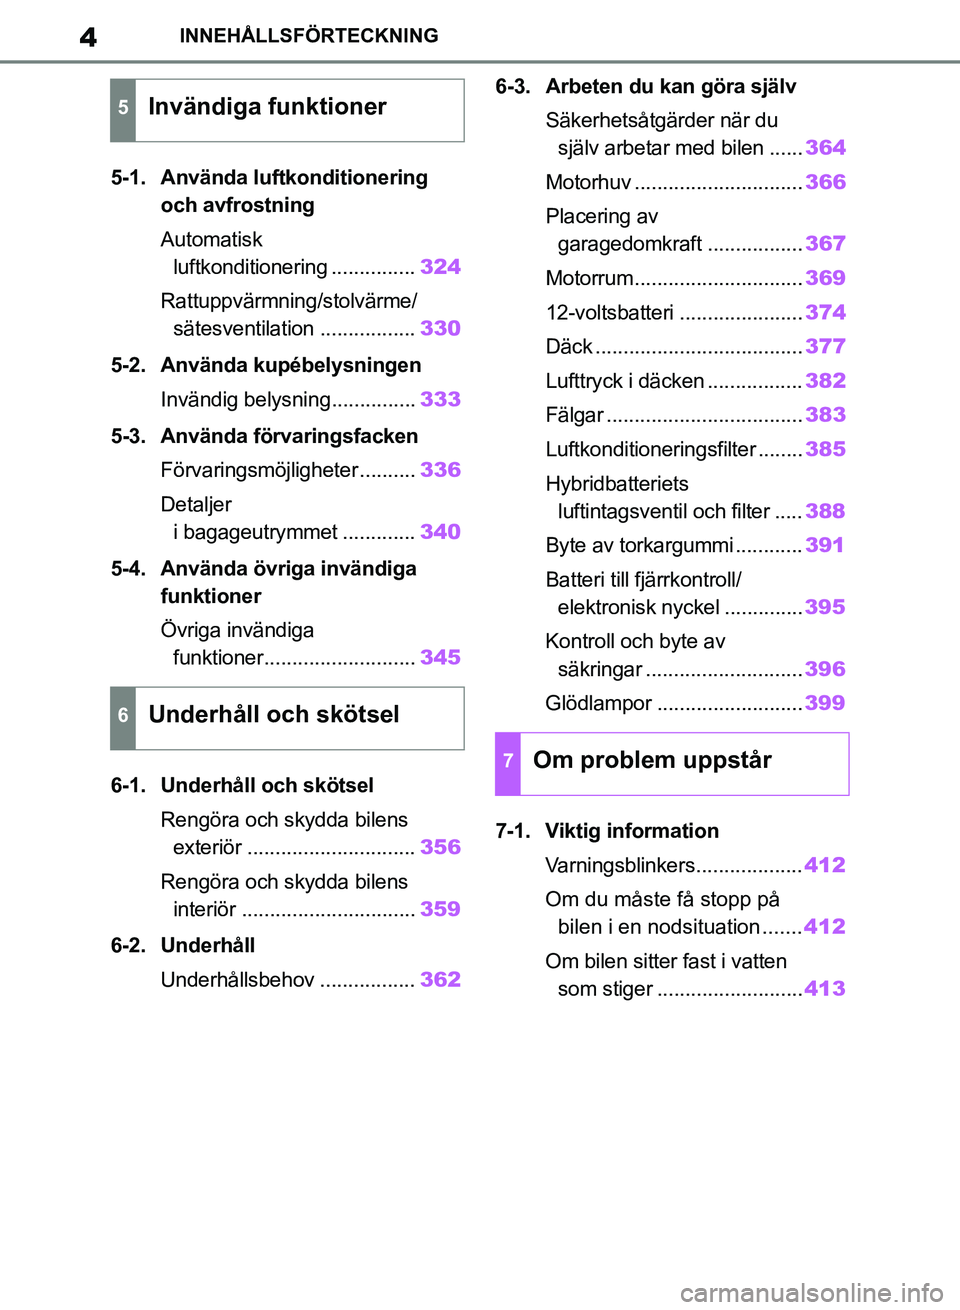 TOYOTA RAV4 2018  Bruksanvisningar (in Swedish) 4INNEHÅLLSFÖRTECKNING
5-1. Använda luftkonditionering och avfrostning
Automatisk 
luftkonditionering ............... 324
Rattuppvärmning/stolvärme/ sätesventilation ................. 330
5-2. An